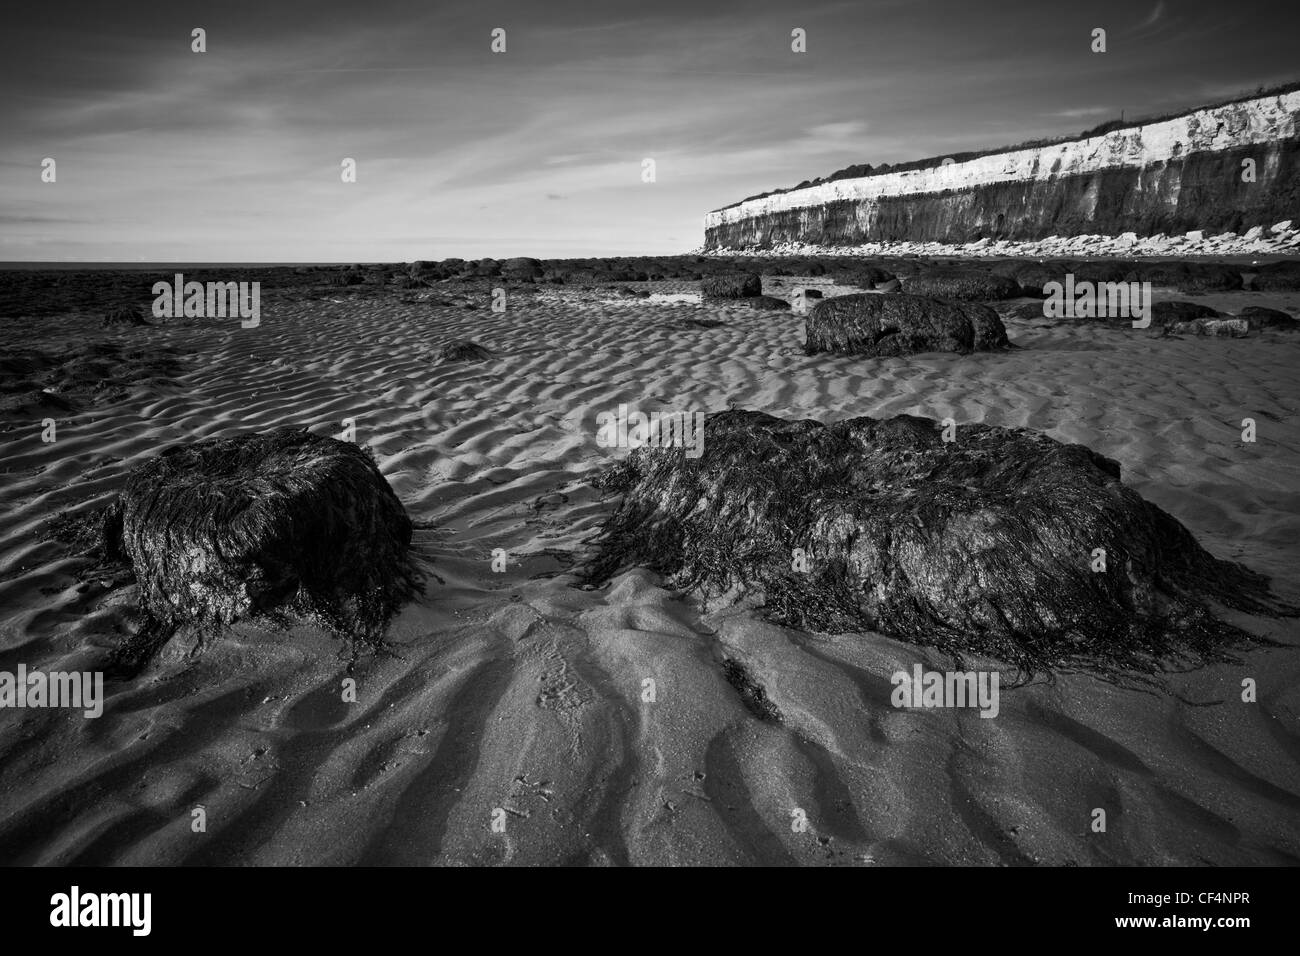 Des monticules couverts d'algues sur la plage de Hunstanton, stratifié par ses falaises fossilifères. Banque D'Images